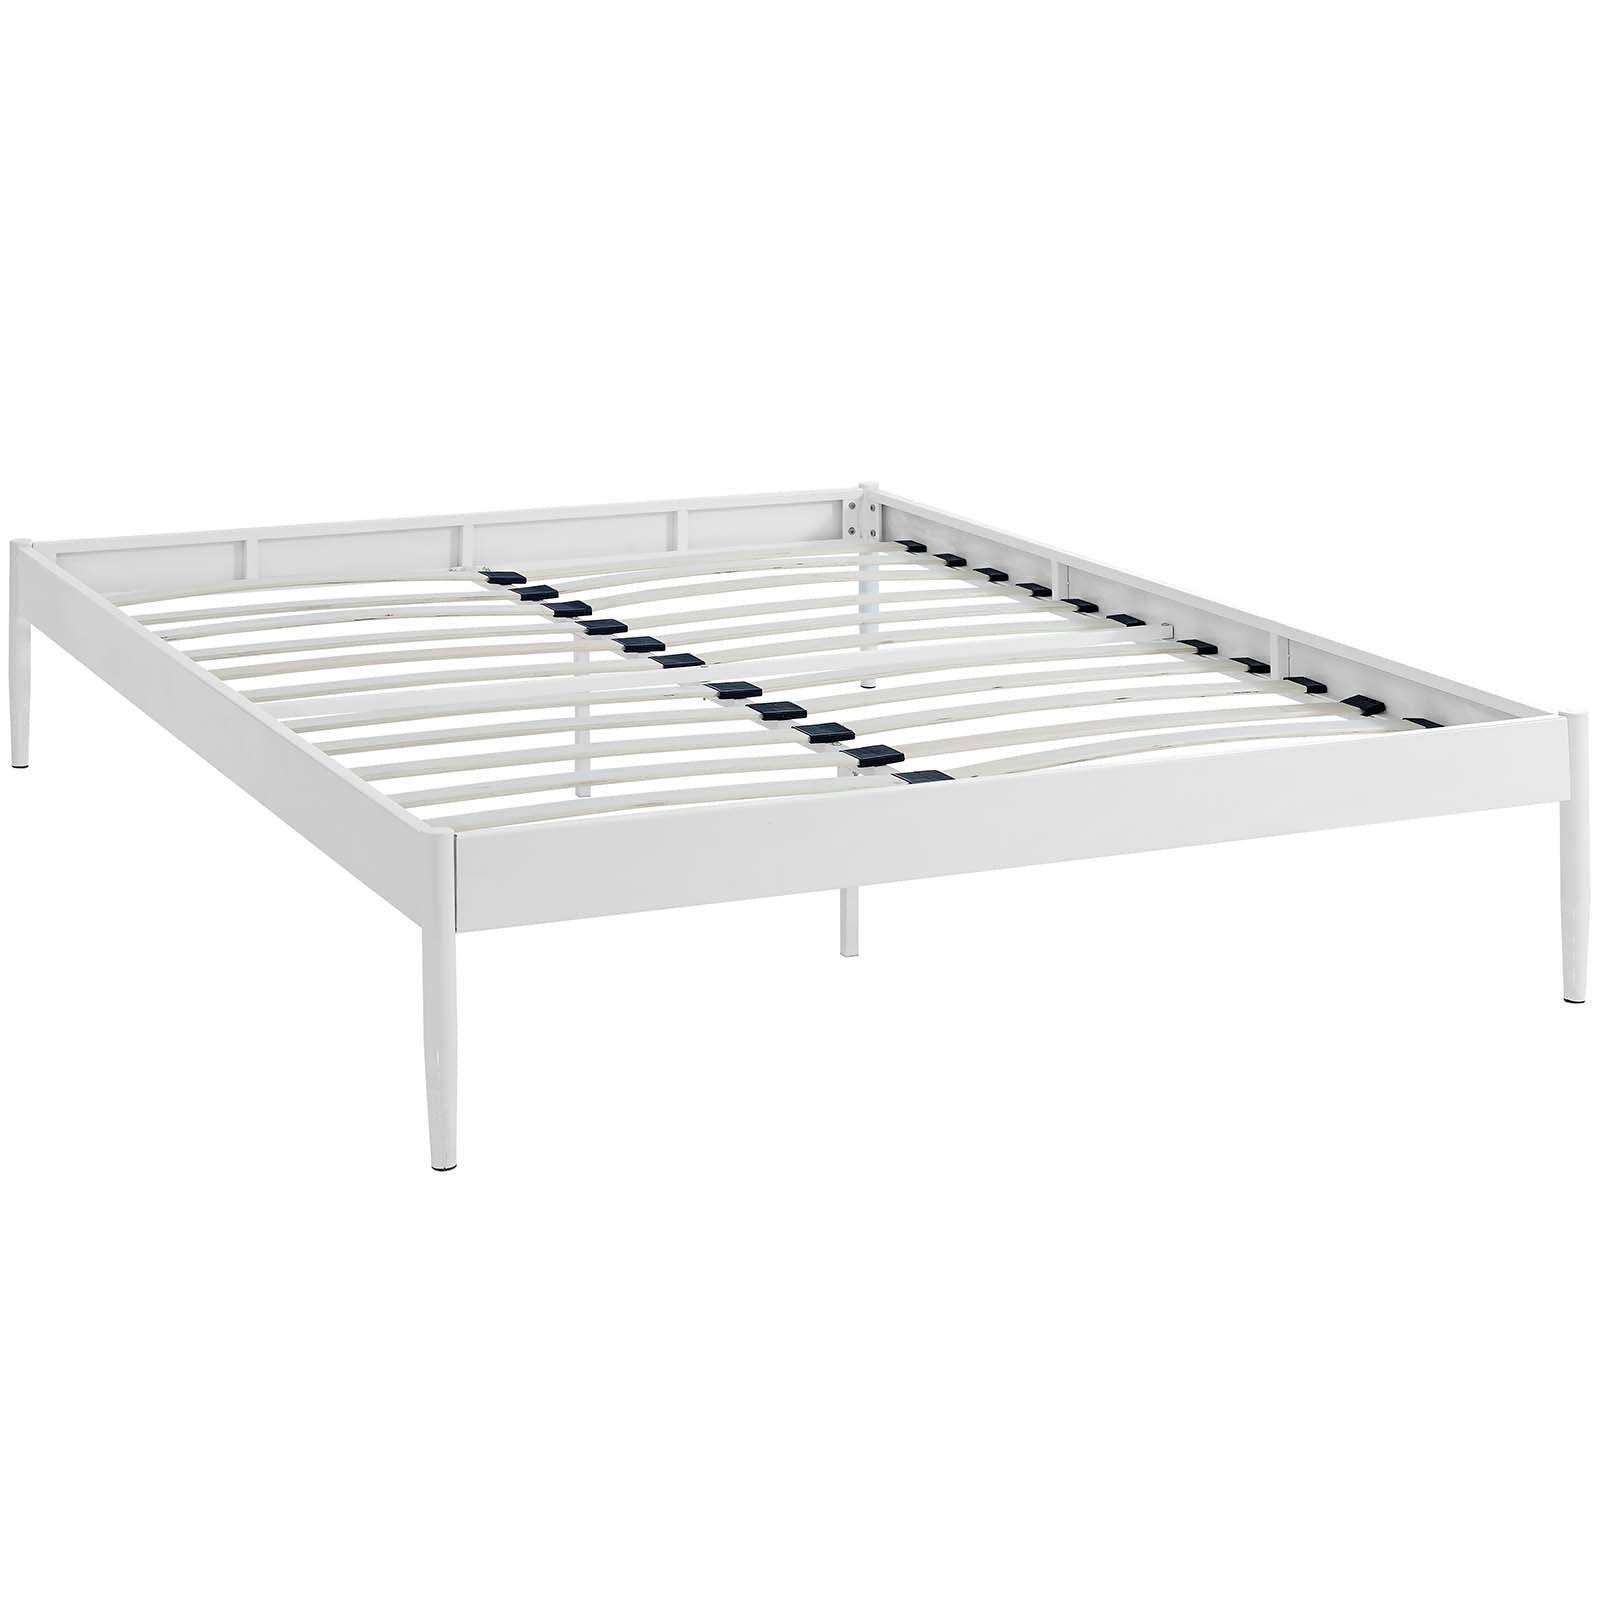 Modway Beds - Elsie Full Bed Frame White